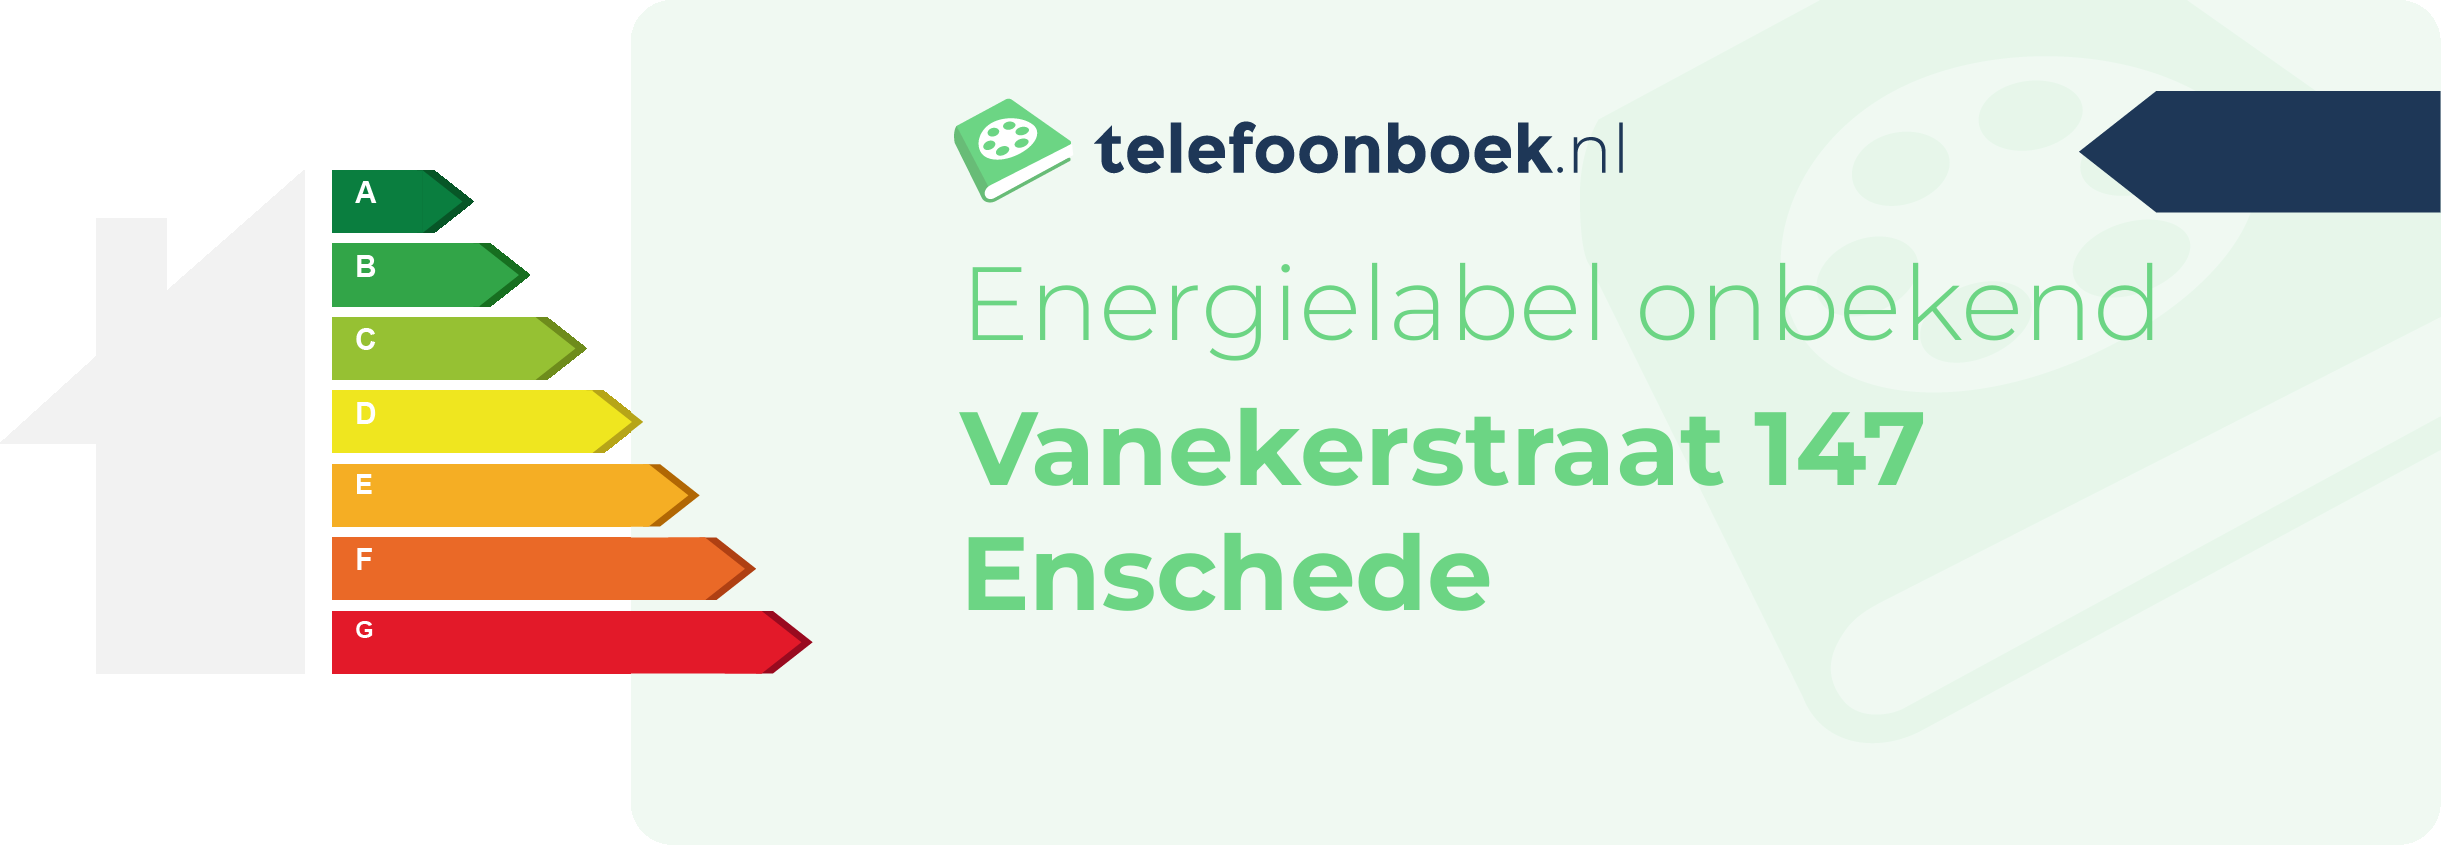 Energielabel Vanekerstraat 147 Enschede